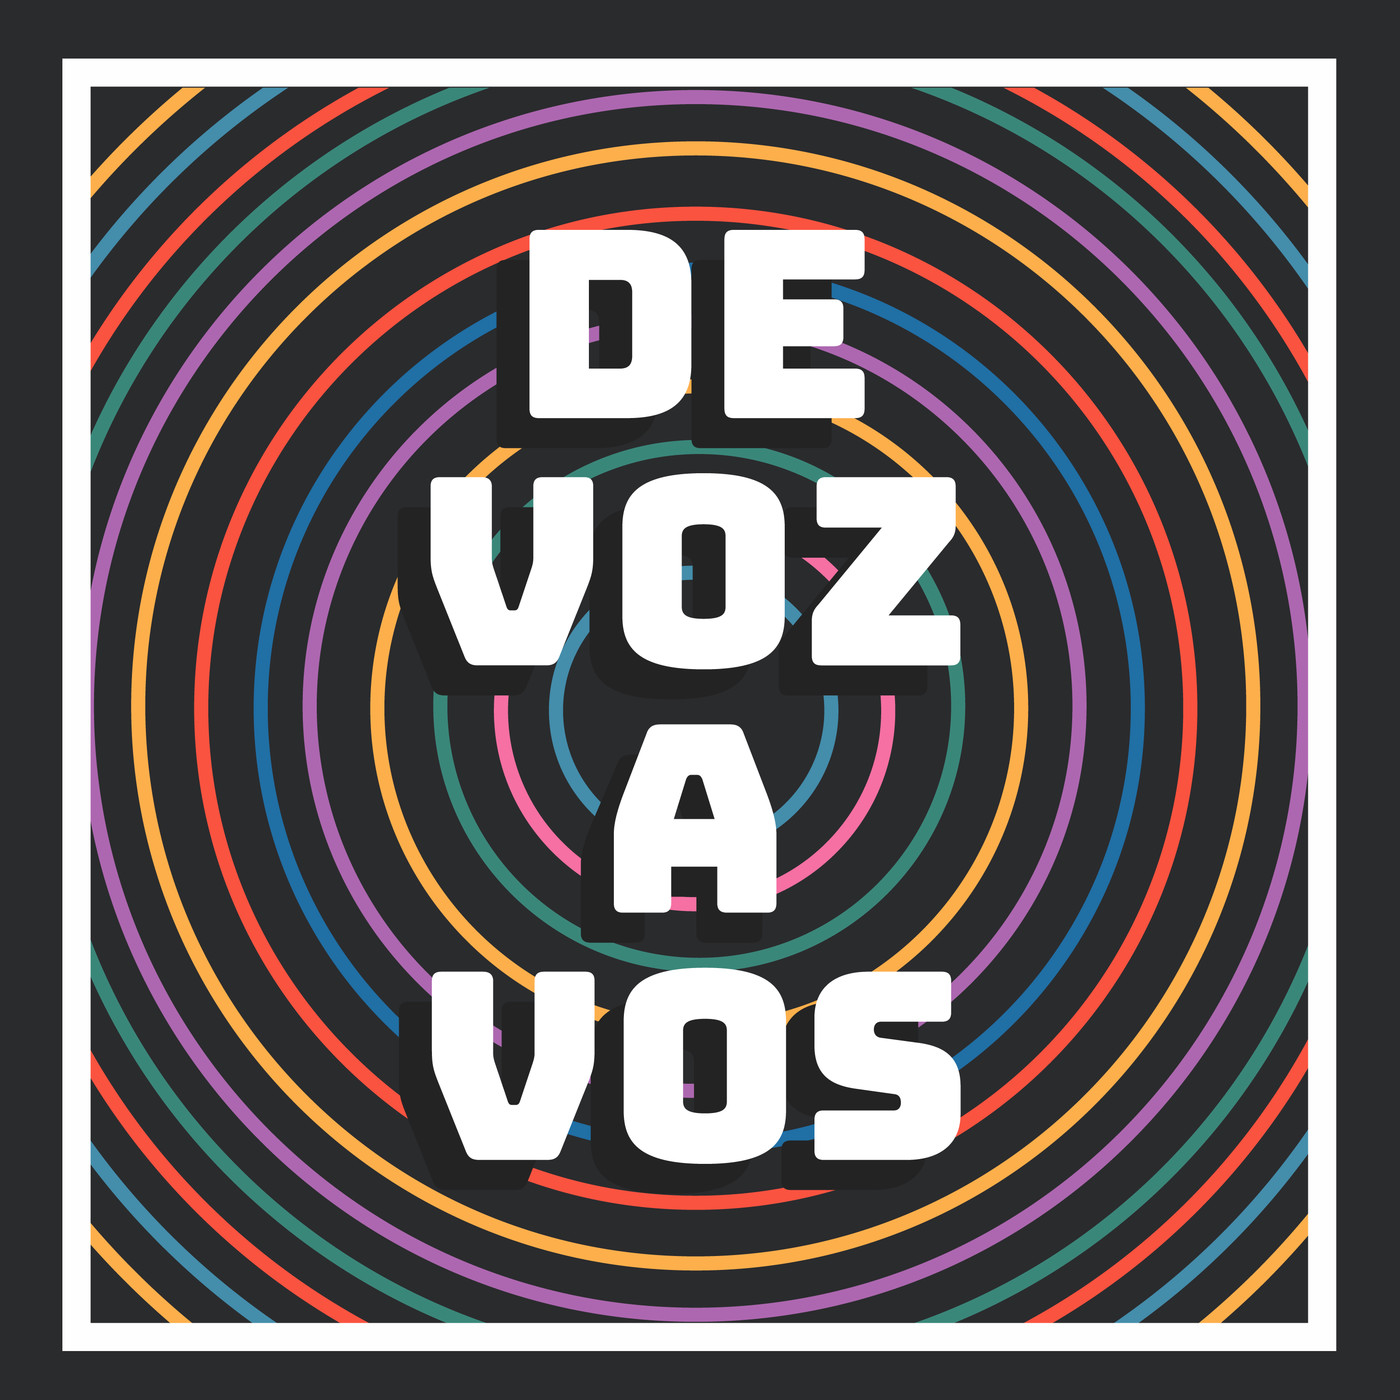 De Voz A Vos Podcast